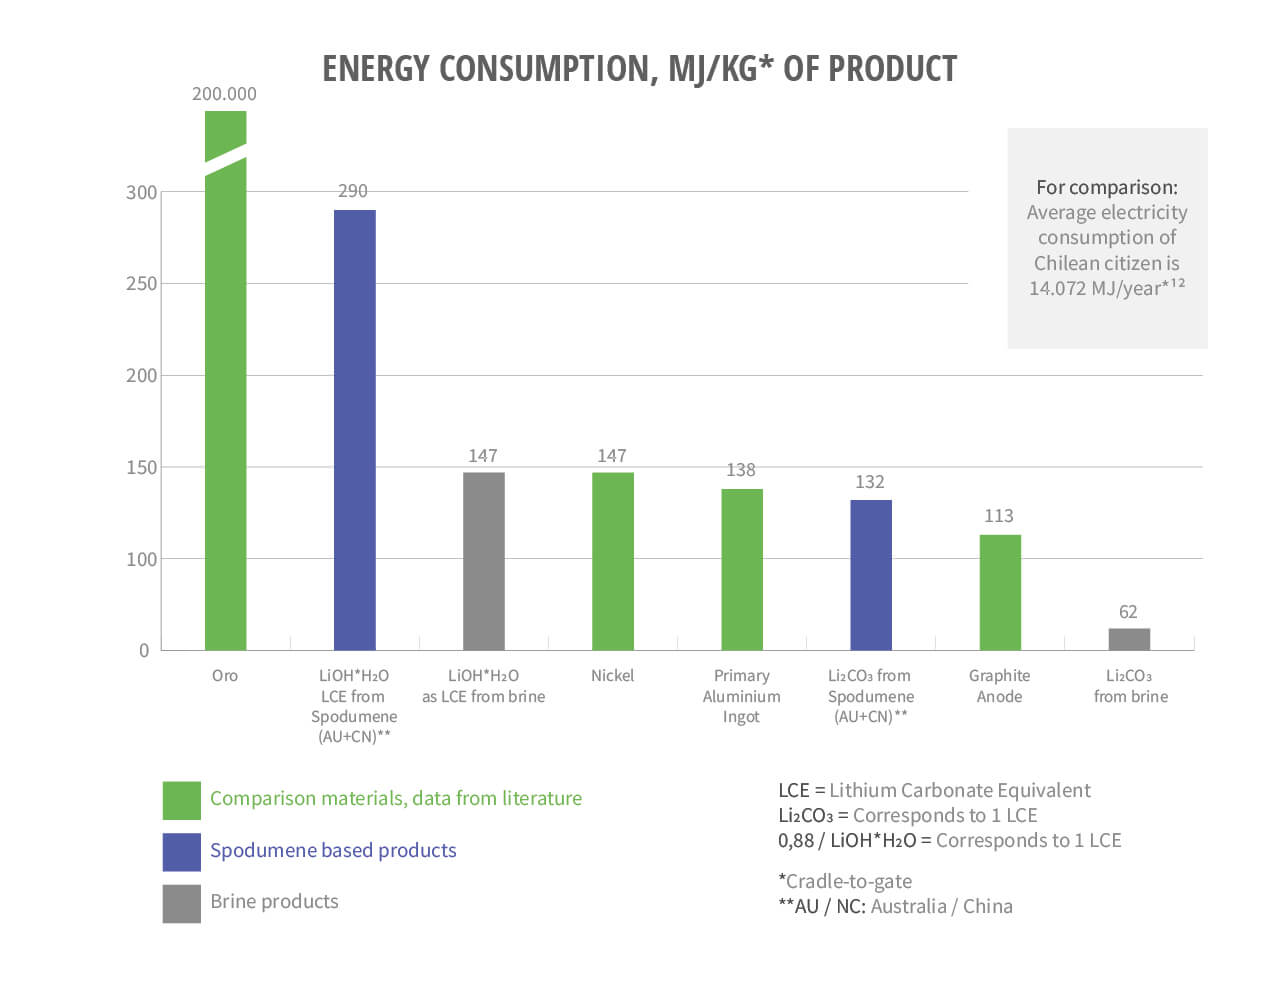 Power consumption graph